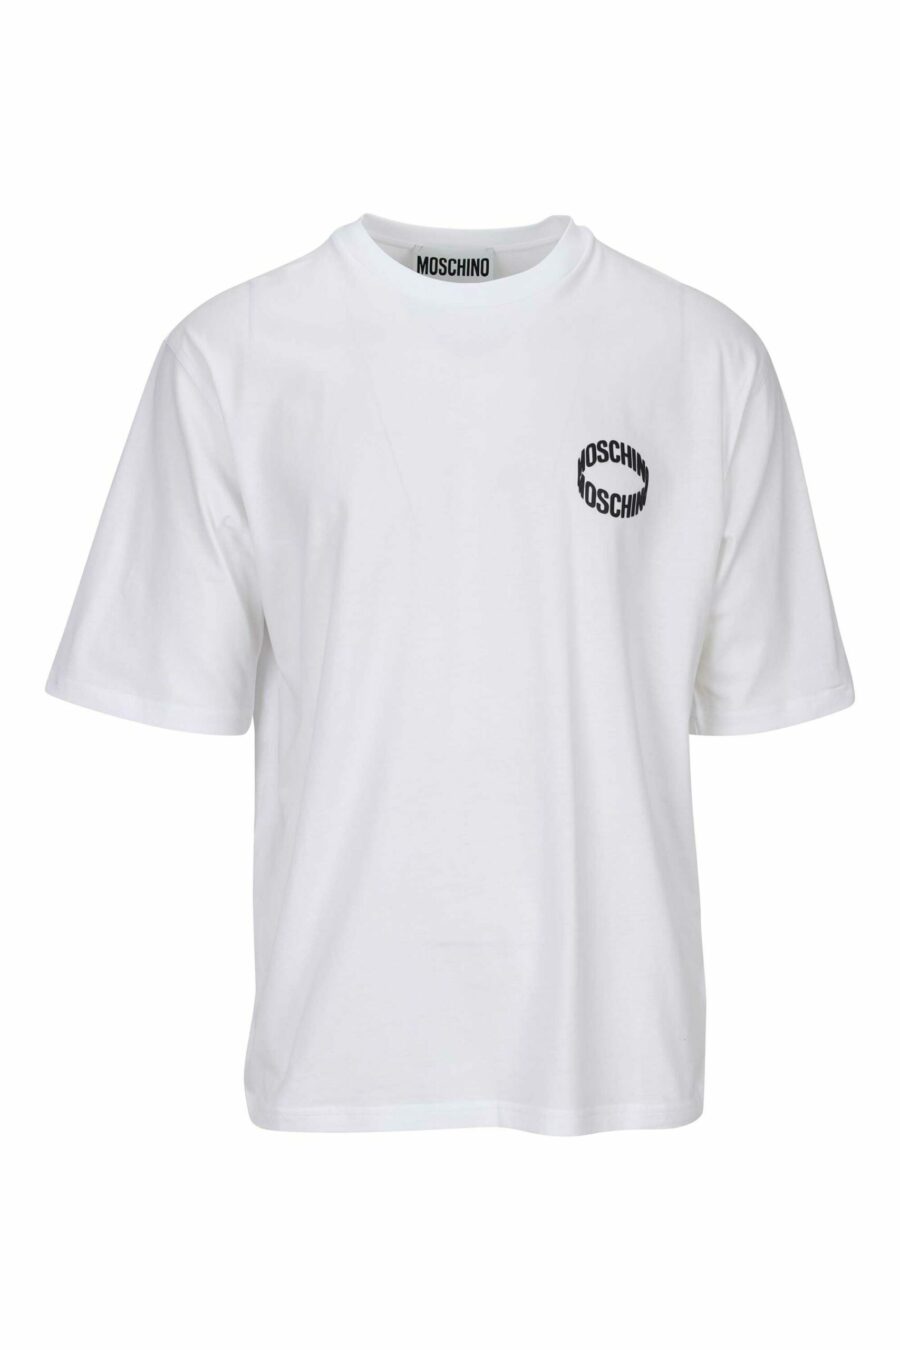 Camiseta blanca "oversize" con minilogo circular negro - 667113394060 scaled